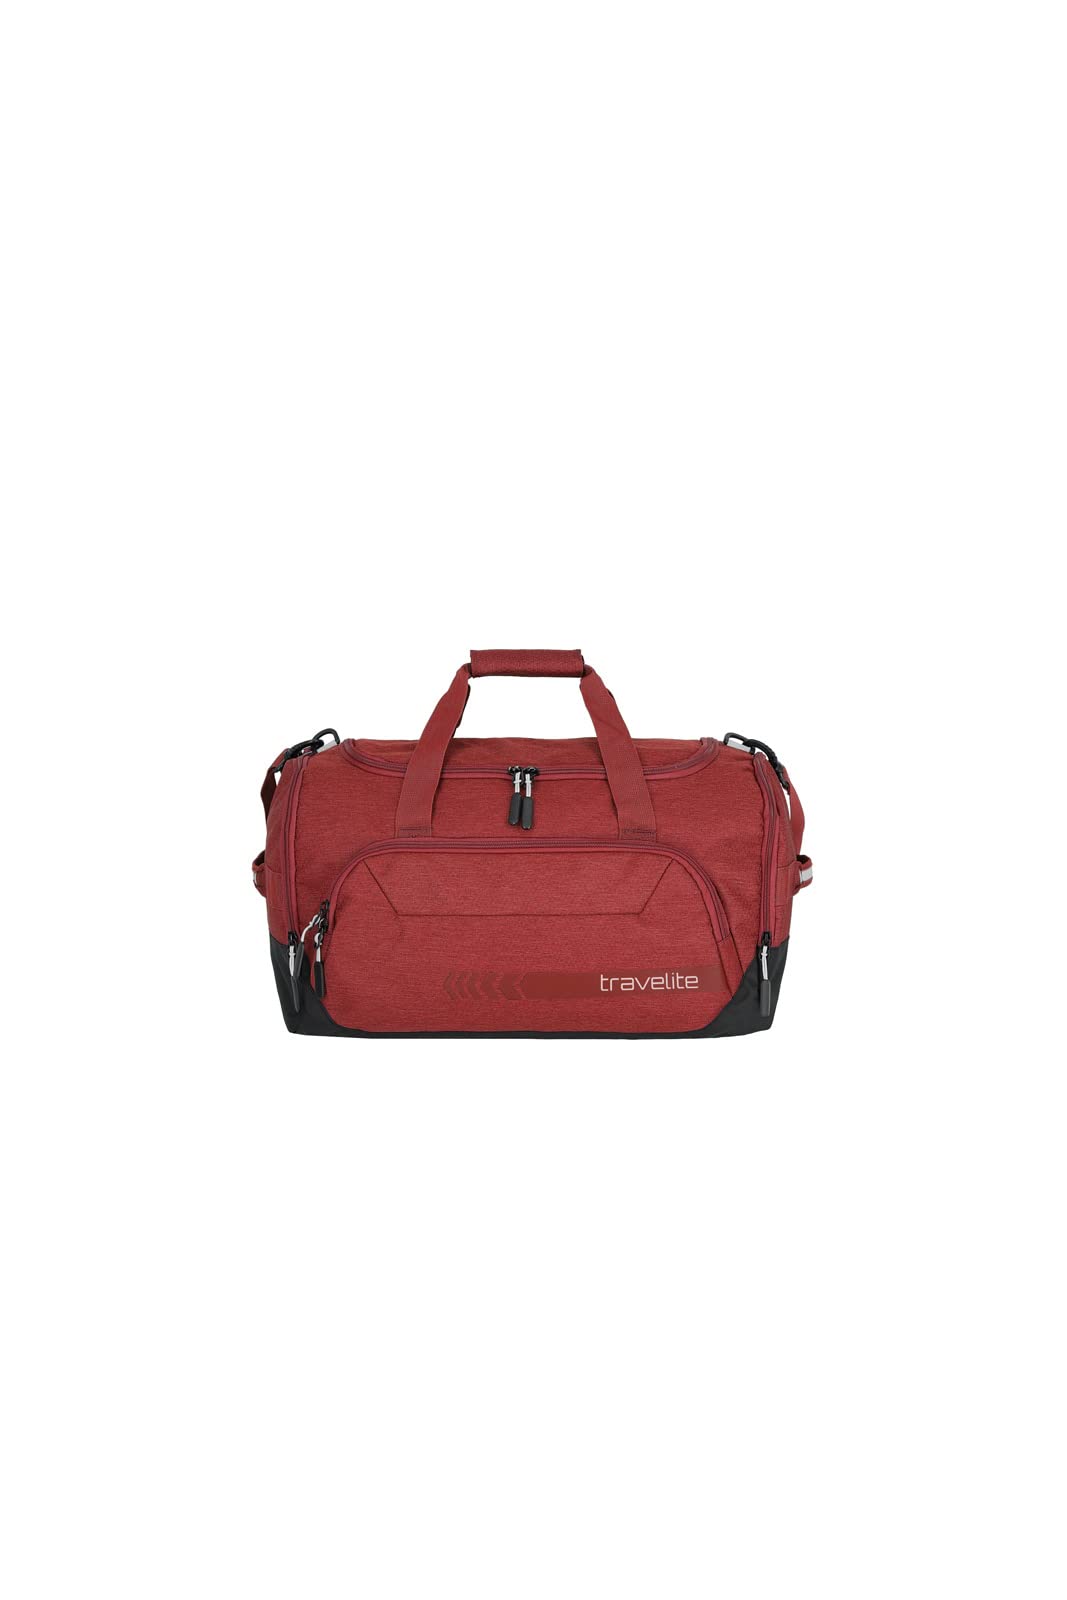 Travelite Reisetasche Größe S Handgepäck, Gepäck Serie KICK OFF: Praktische kleine Reisetasche für Urlaub und Sport, 006913-10, 40 cm, 23 Liter, Rot